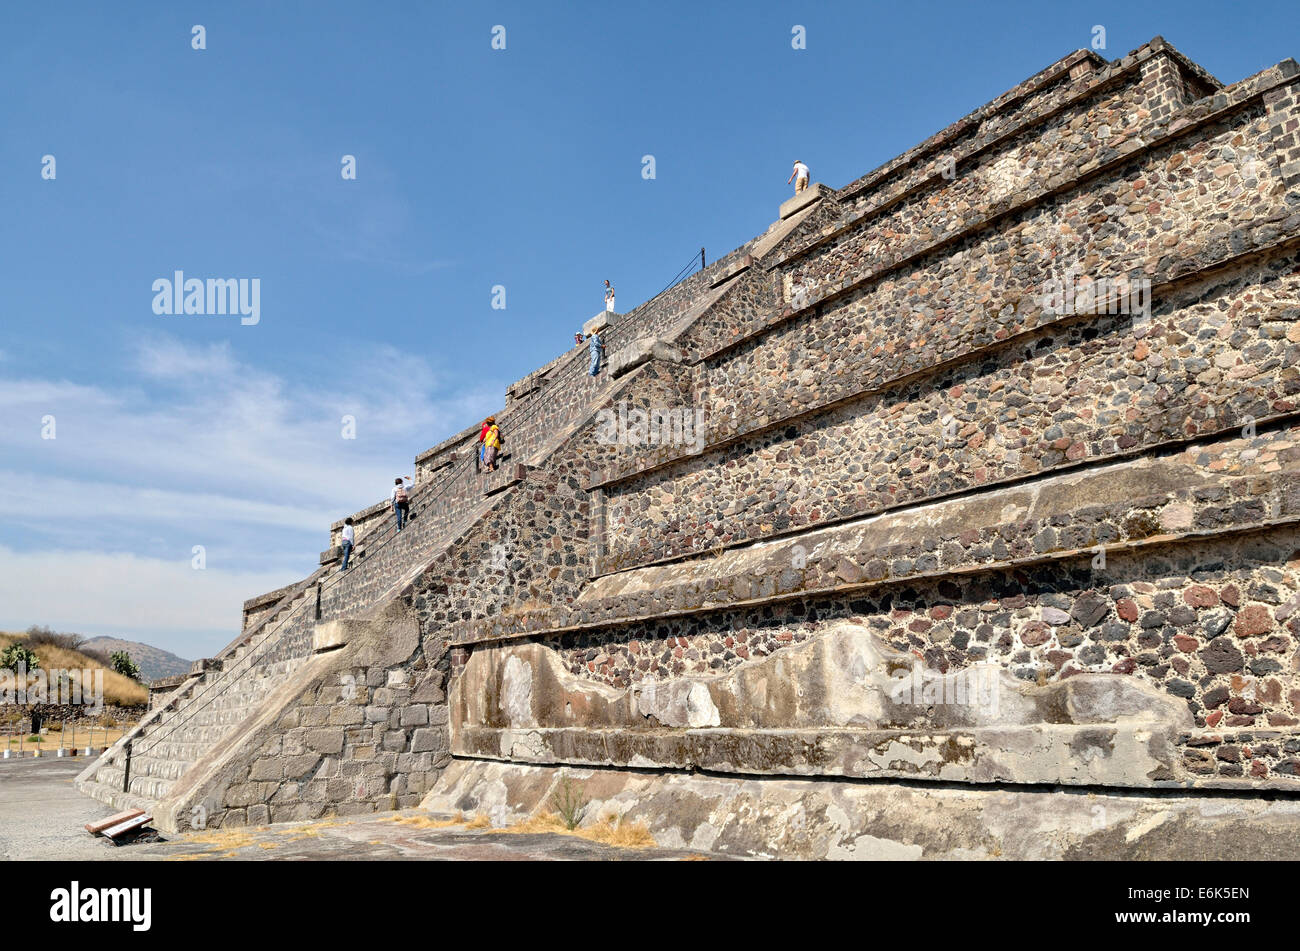 Les touristes l'ascension de la pyramide de la Lune, Plaza de la Luna, Site du patrimoine mondial de l'UNESCO Site archéologique de Teotihuacan Banque D'Images